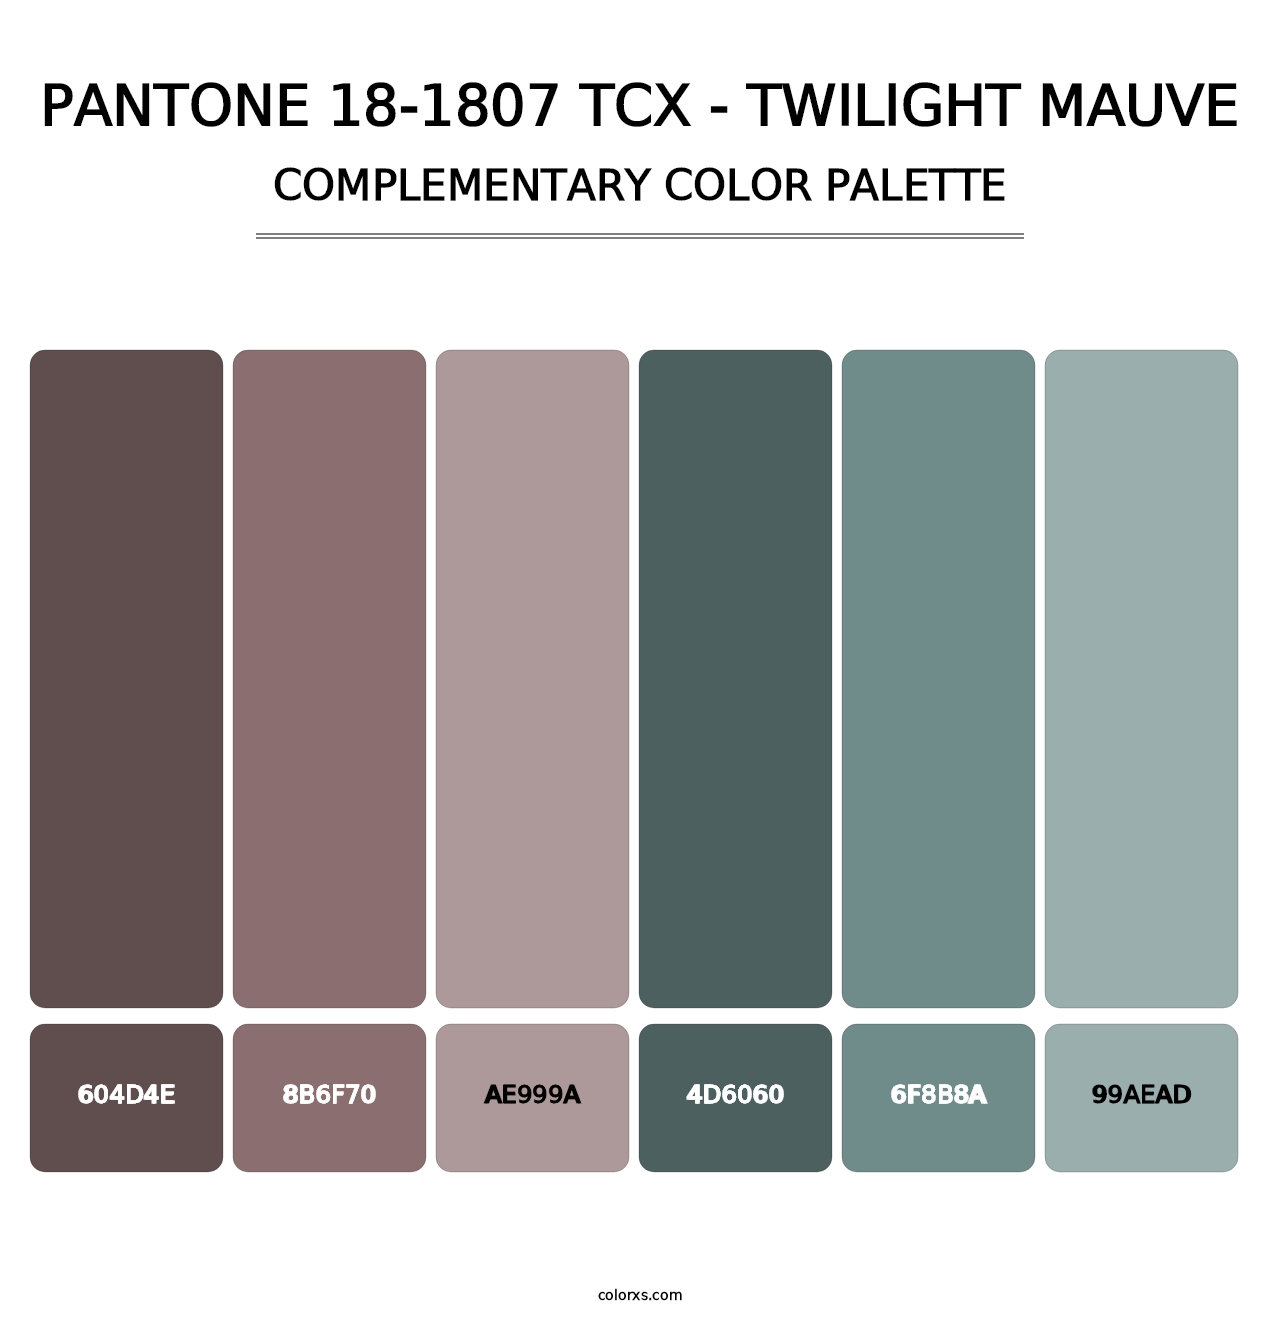 PANTONE 18-1807 TCX - Twilight Mauve - Complementary Color Palette